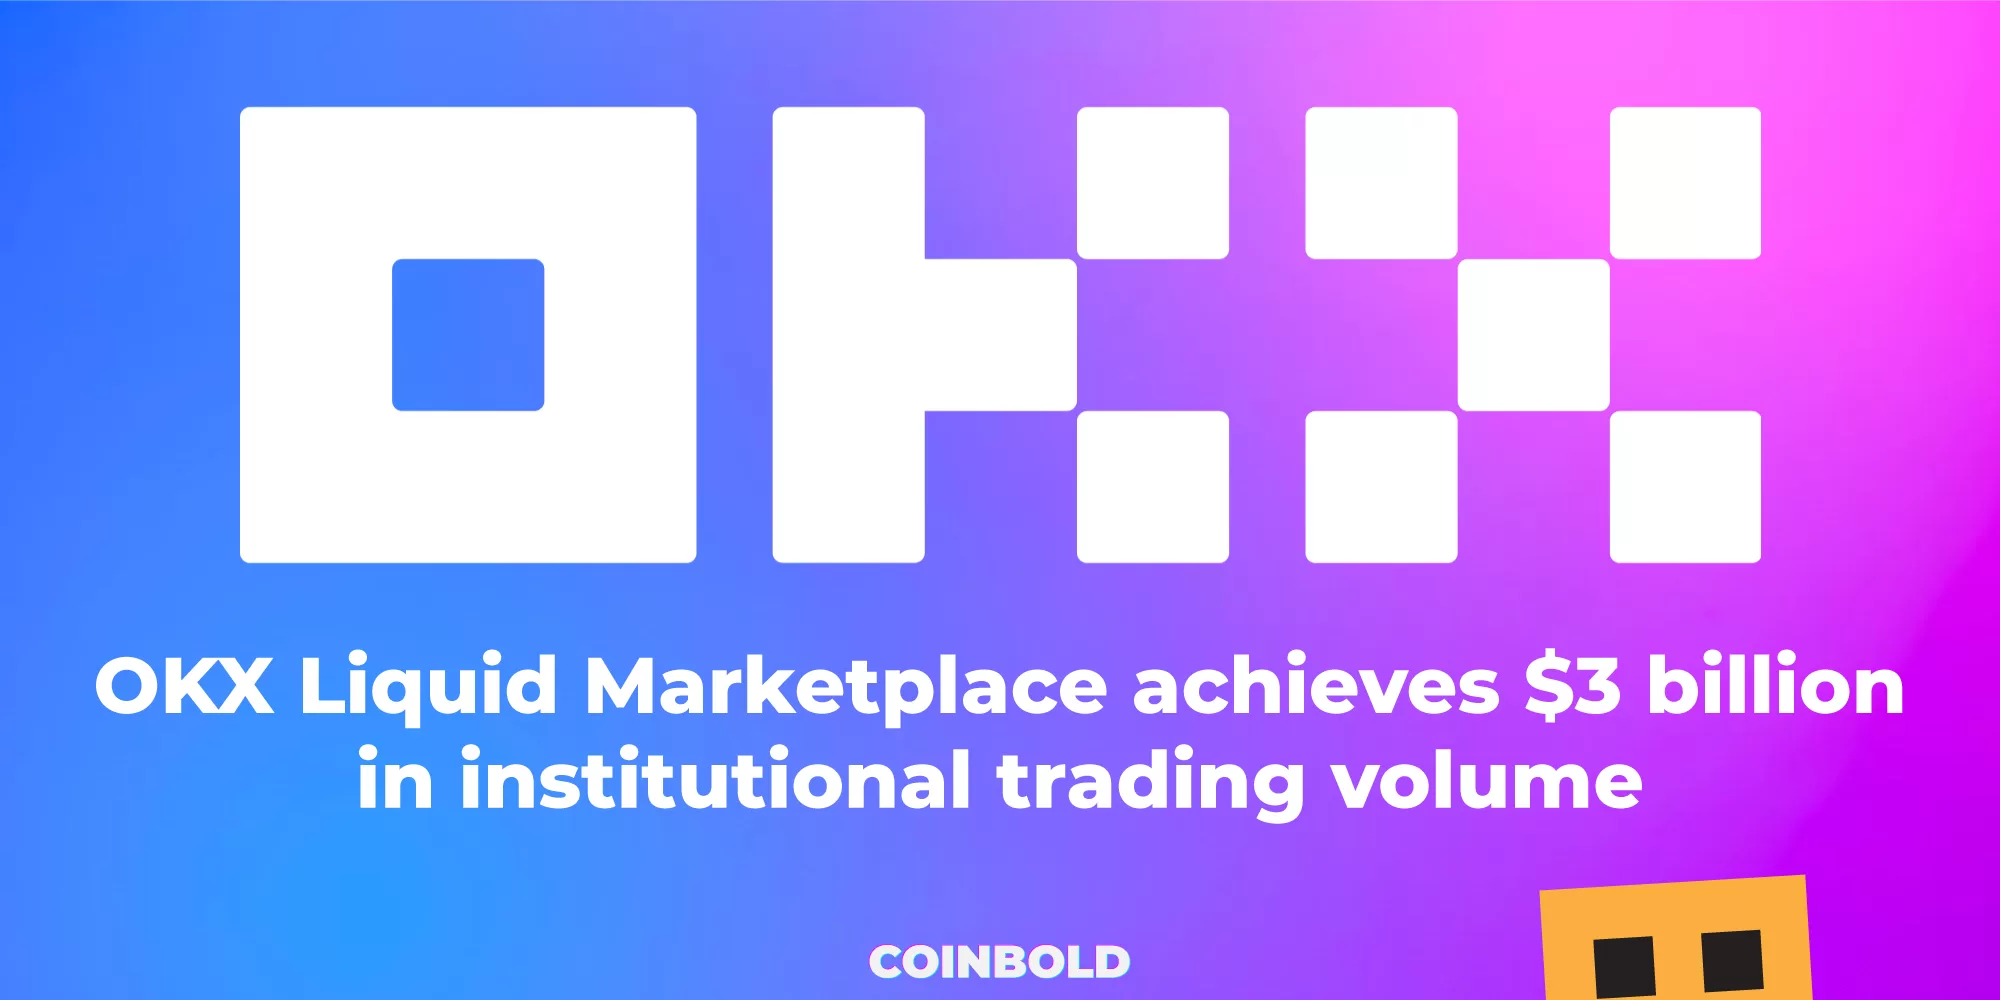 OKX Liquid Marketplace achieves $3 billion in institutional trading volume